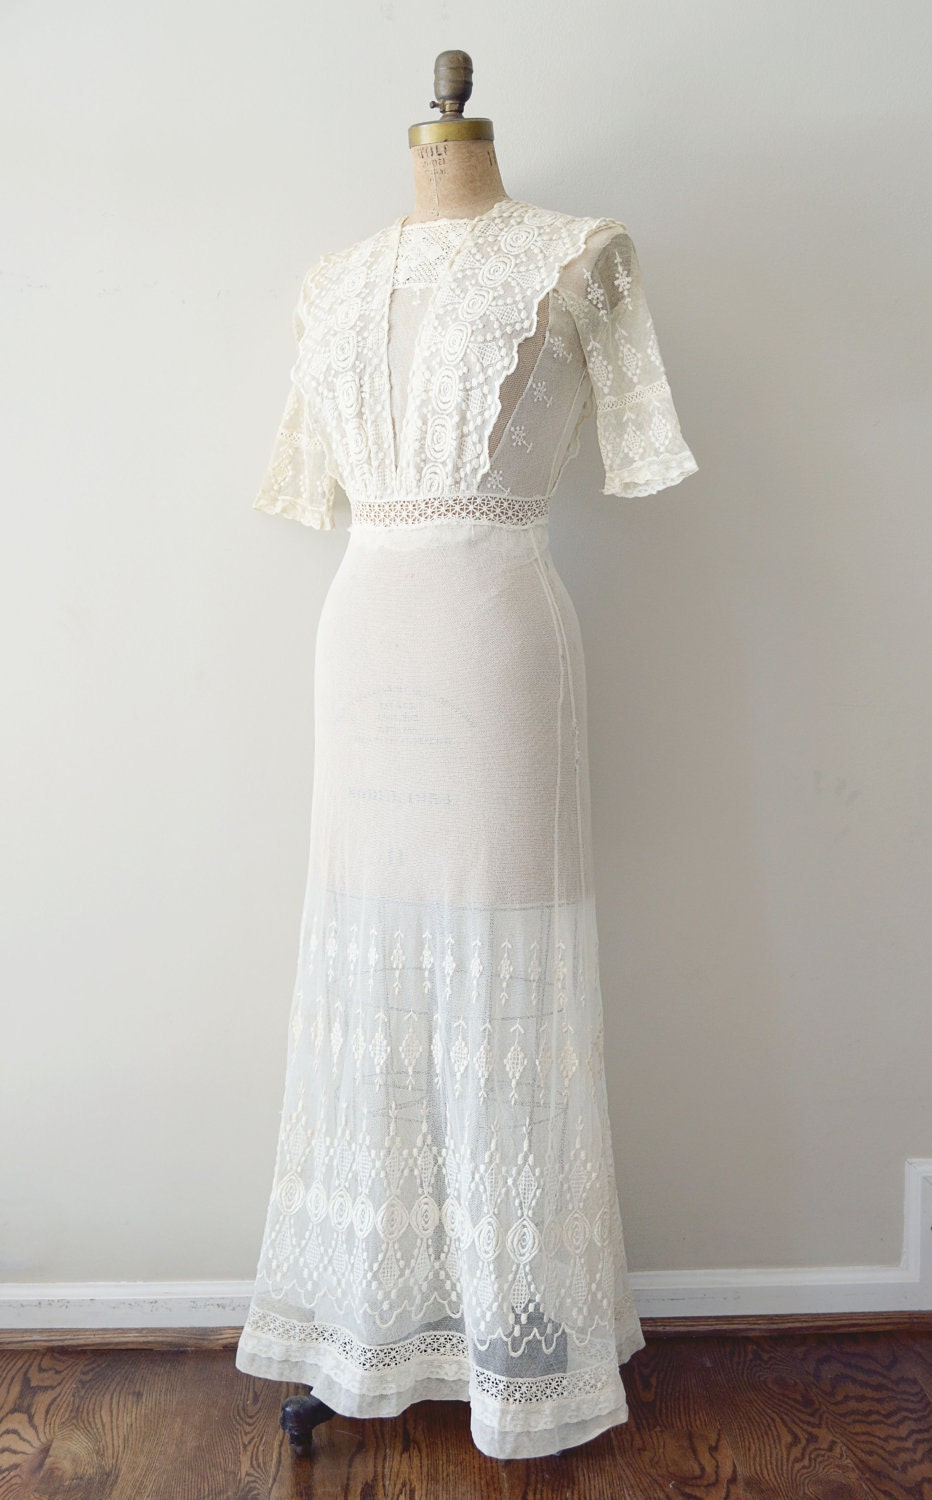 artsANcrafts: Fave Etsy Finds - Vintage Wedding Dresses